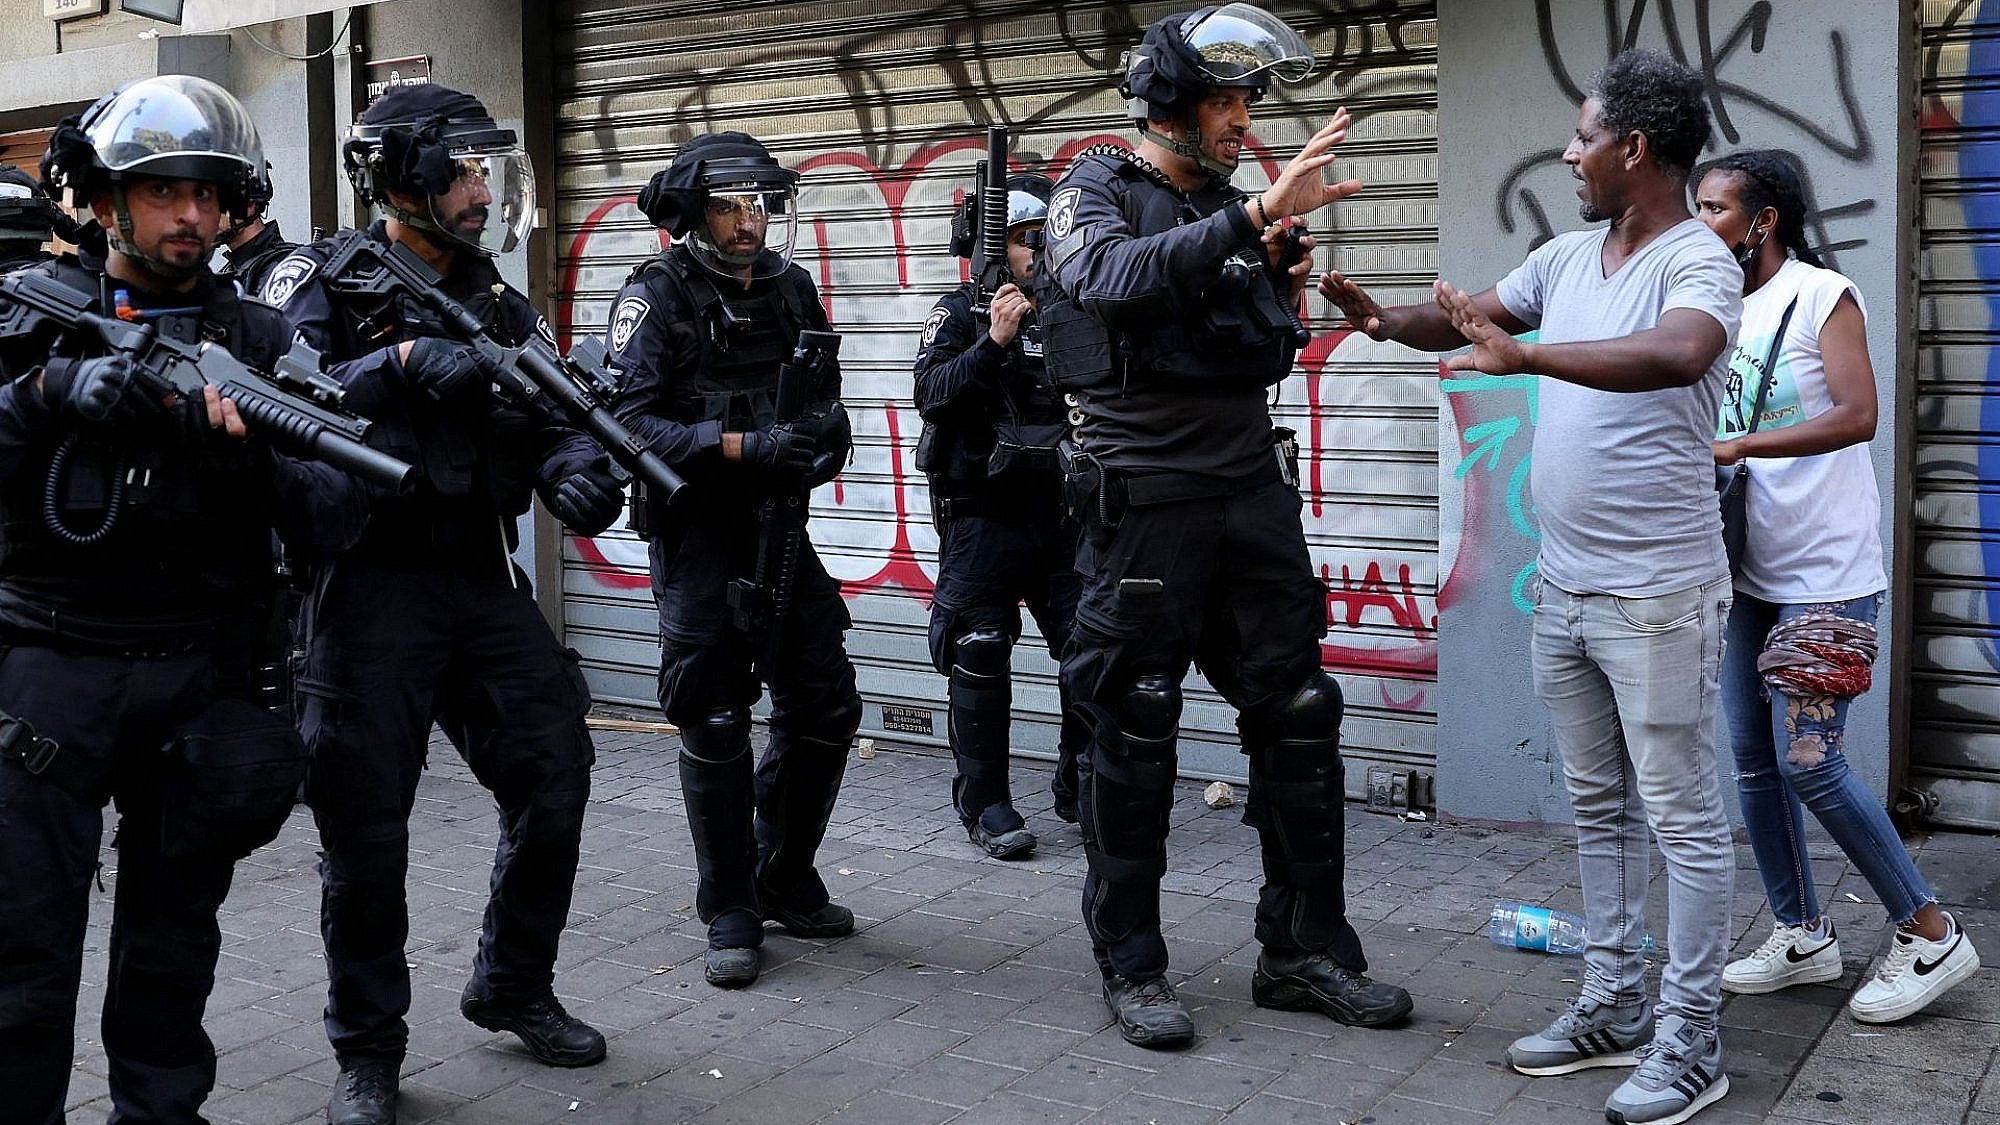 שוטרים עם נשקים שלופים, אתמול בדרום תל אביב (צילום: ג'ק גואז/AFP/גטי אימג'ס)